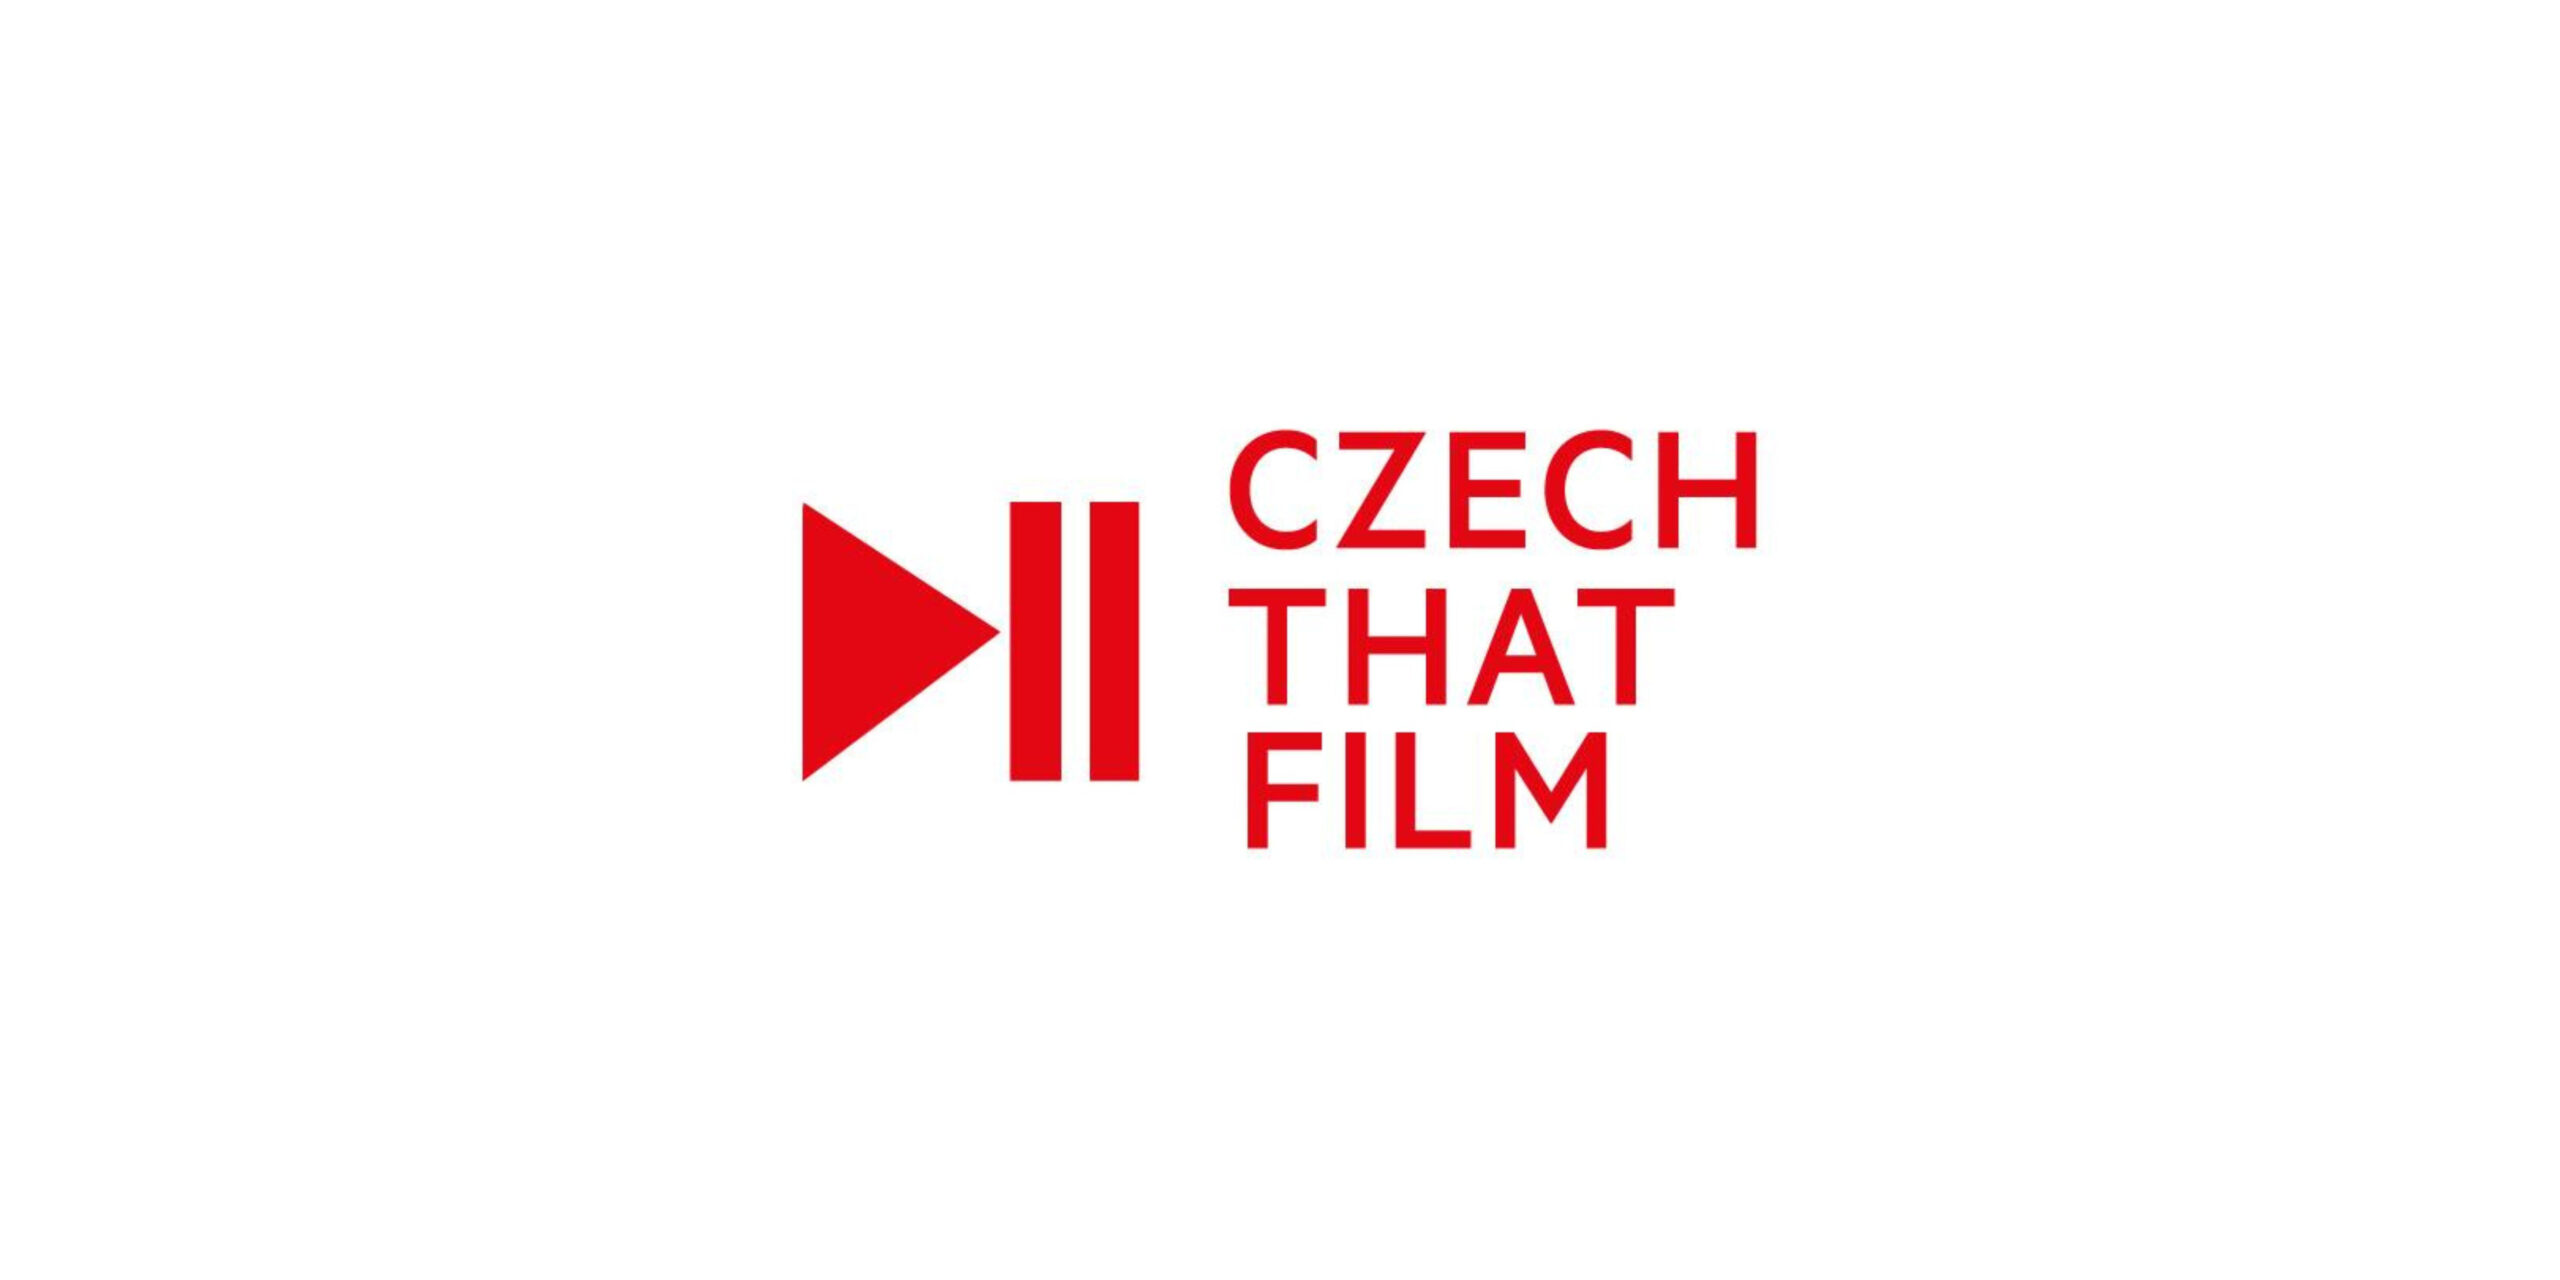 Czech That Film